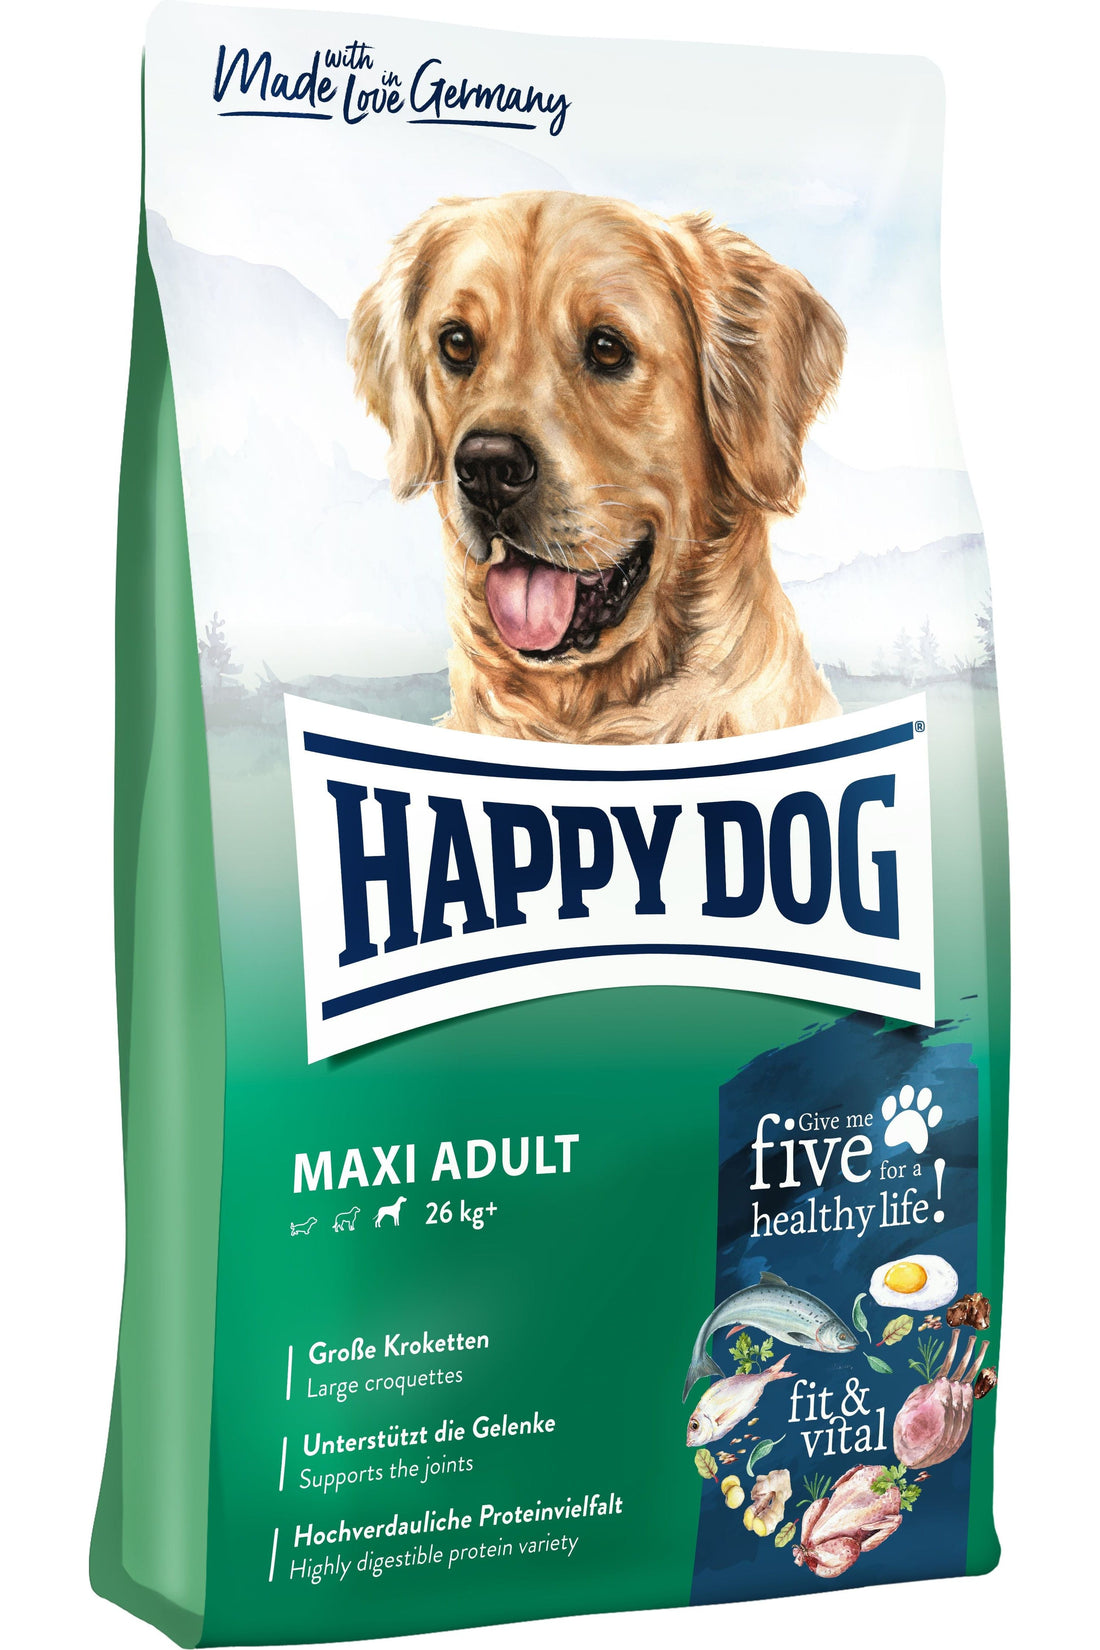 Happy Dog Maxi Adult - AV-Larsen